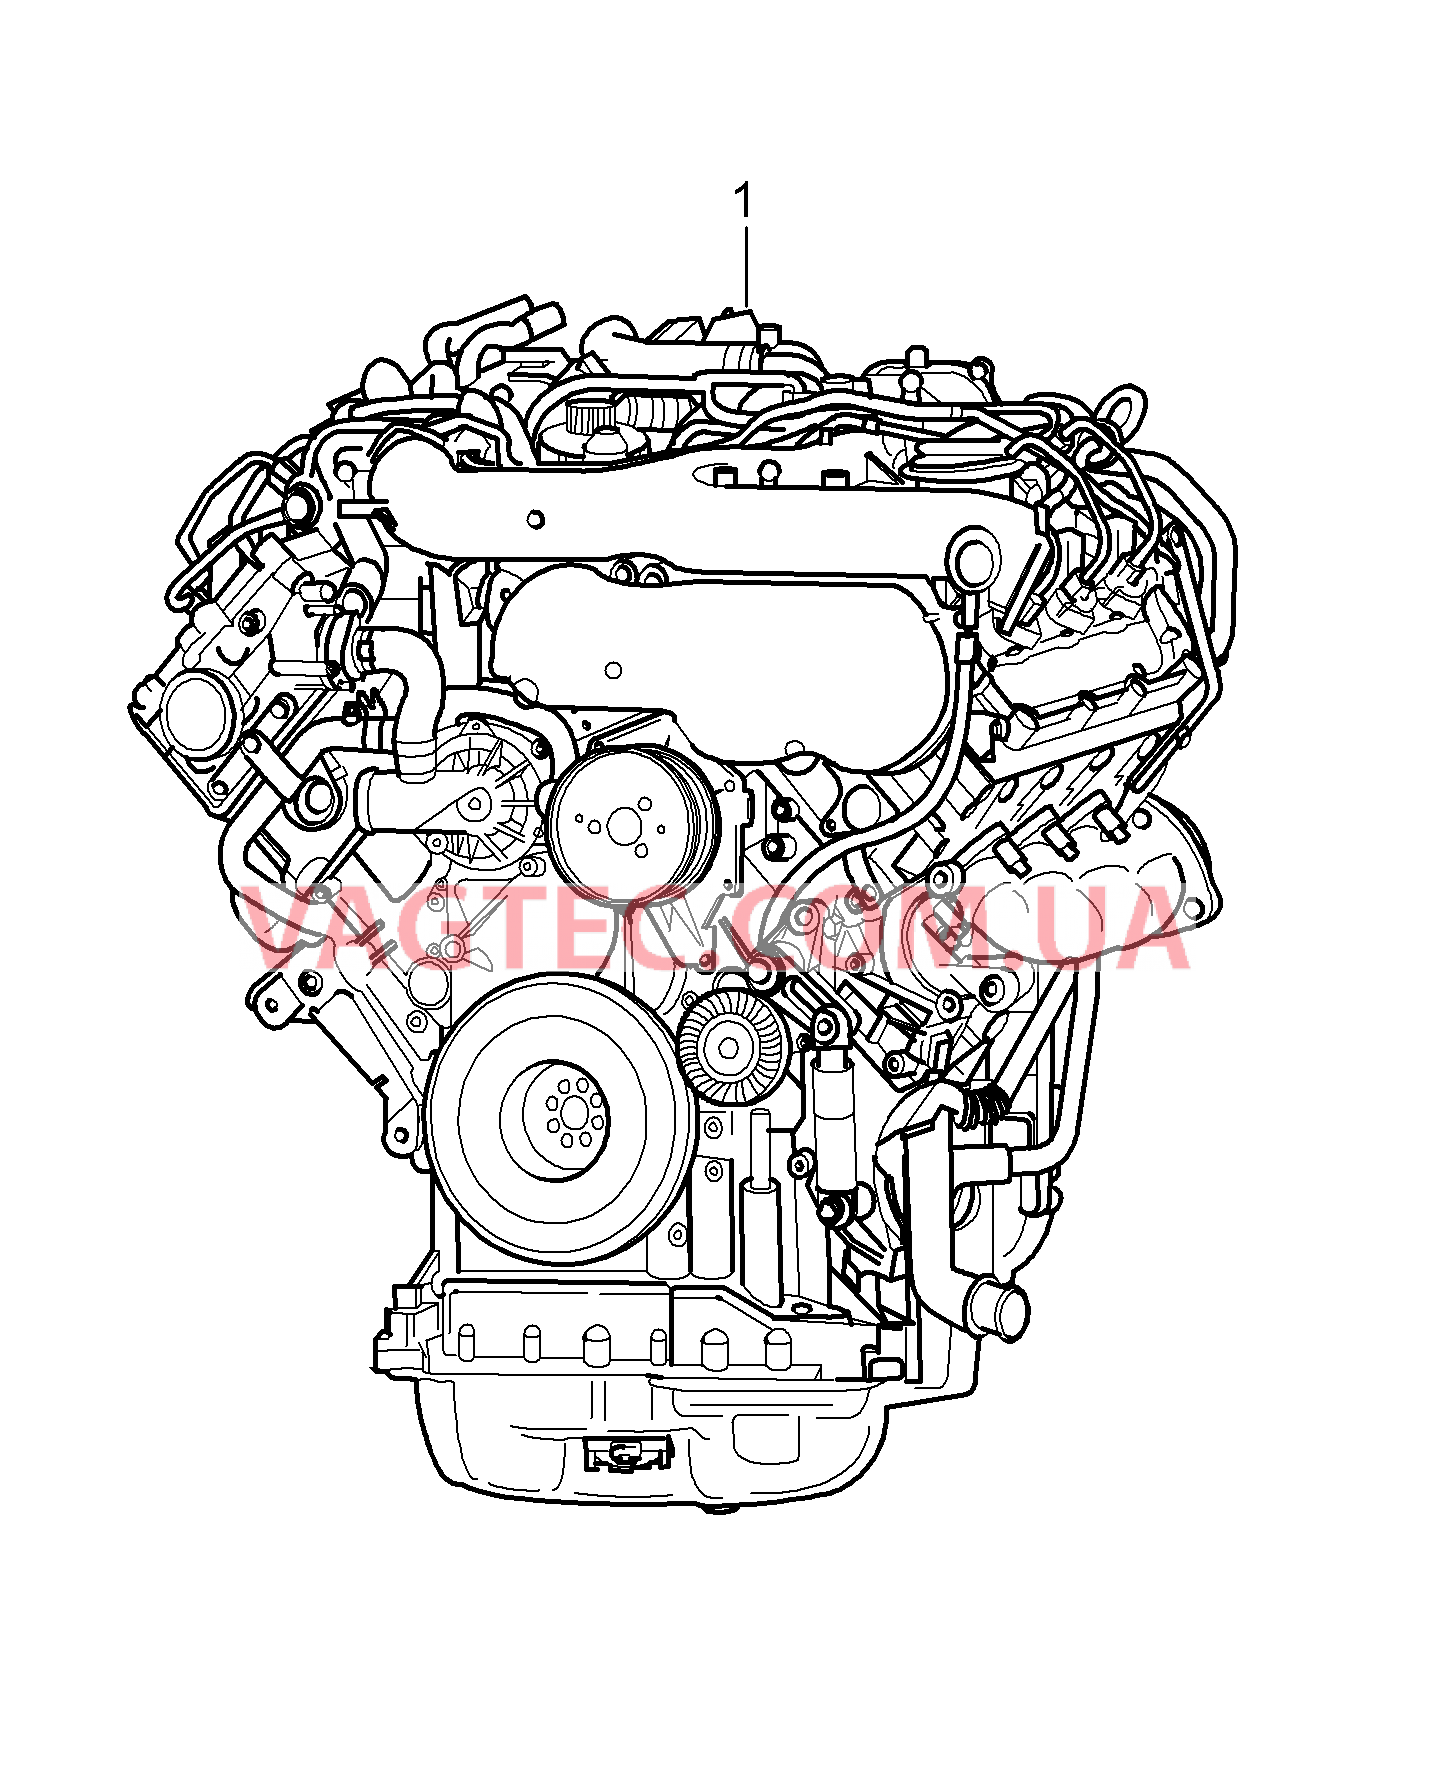 101-020 Запасной двигатель
						
						M05.9D для PORSCHE Cayenne 2007-2010